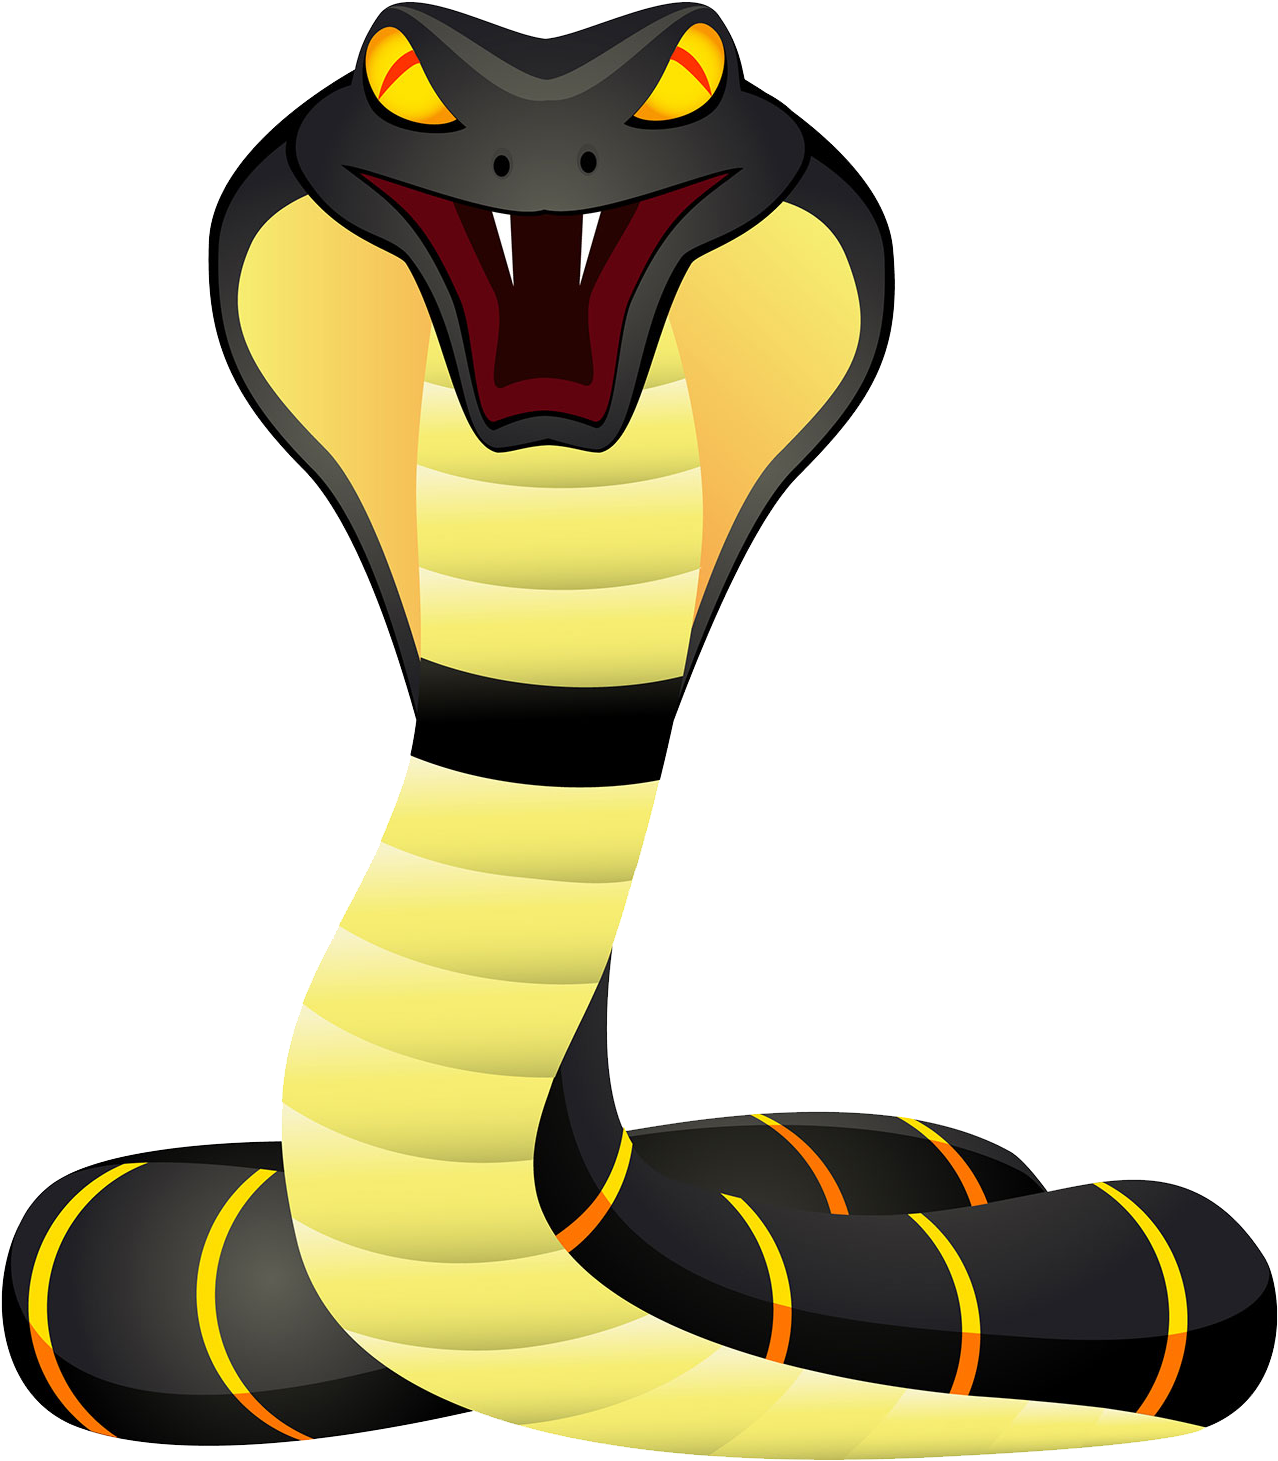 Cobra clipart snake animal, Cobra snake animal Transparent FREE for